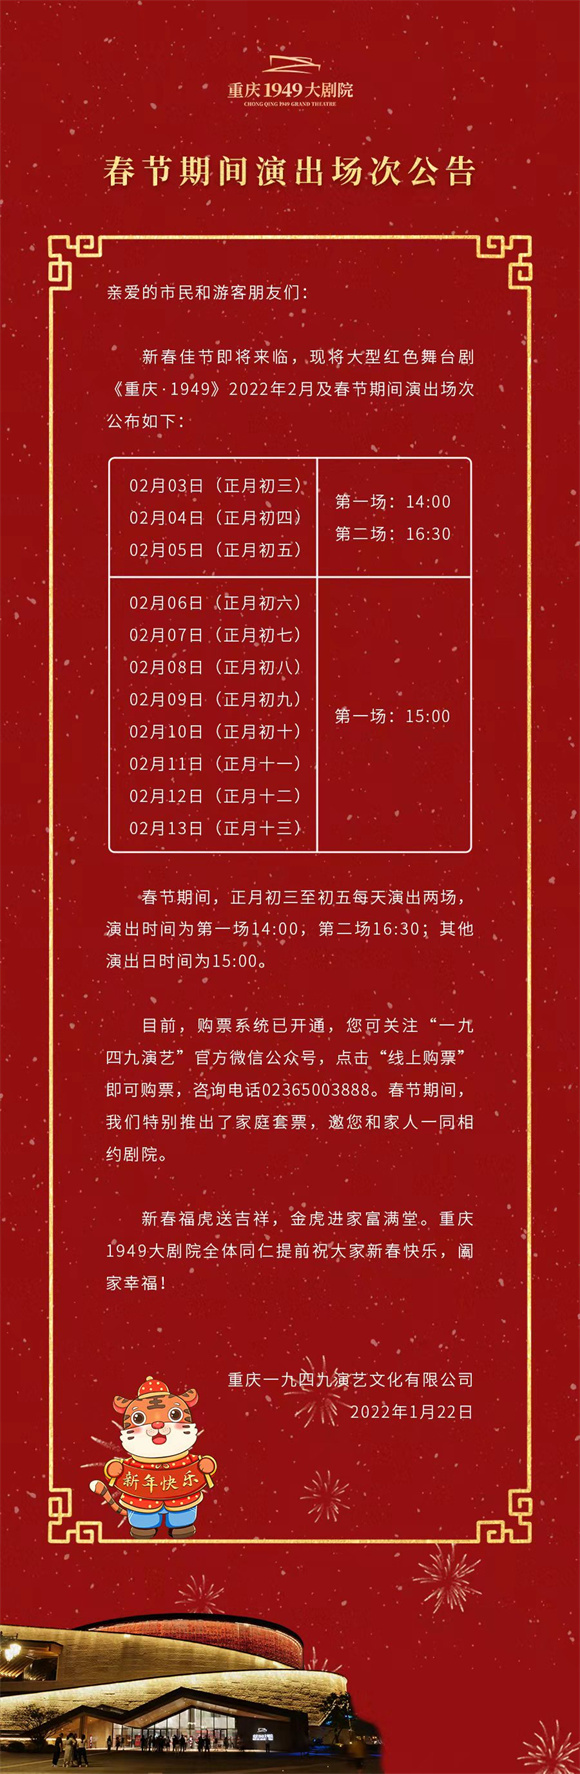 《重庆·1949》春节期间排期表。重庆1949大剧院供图 华龙网发